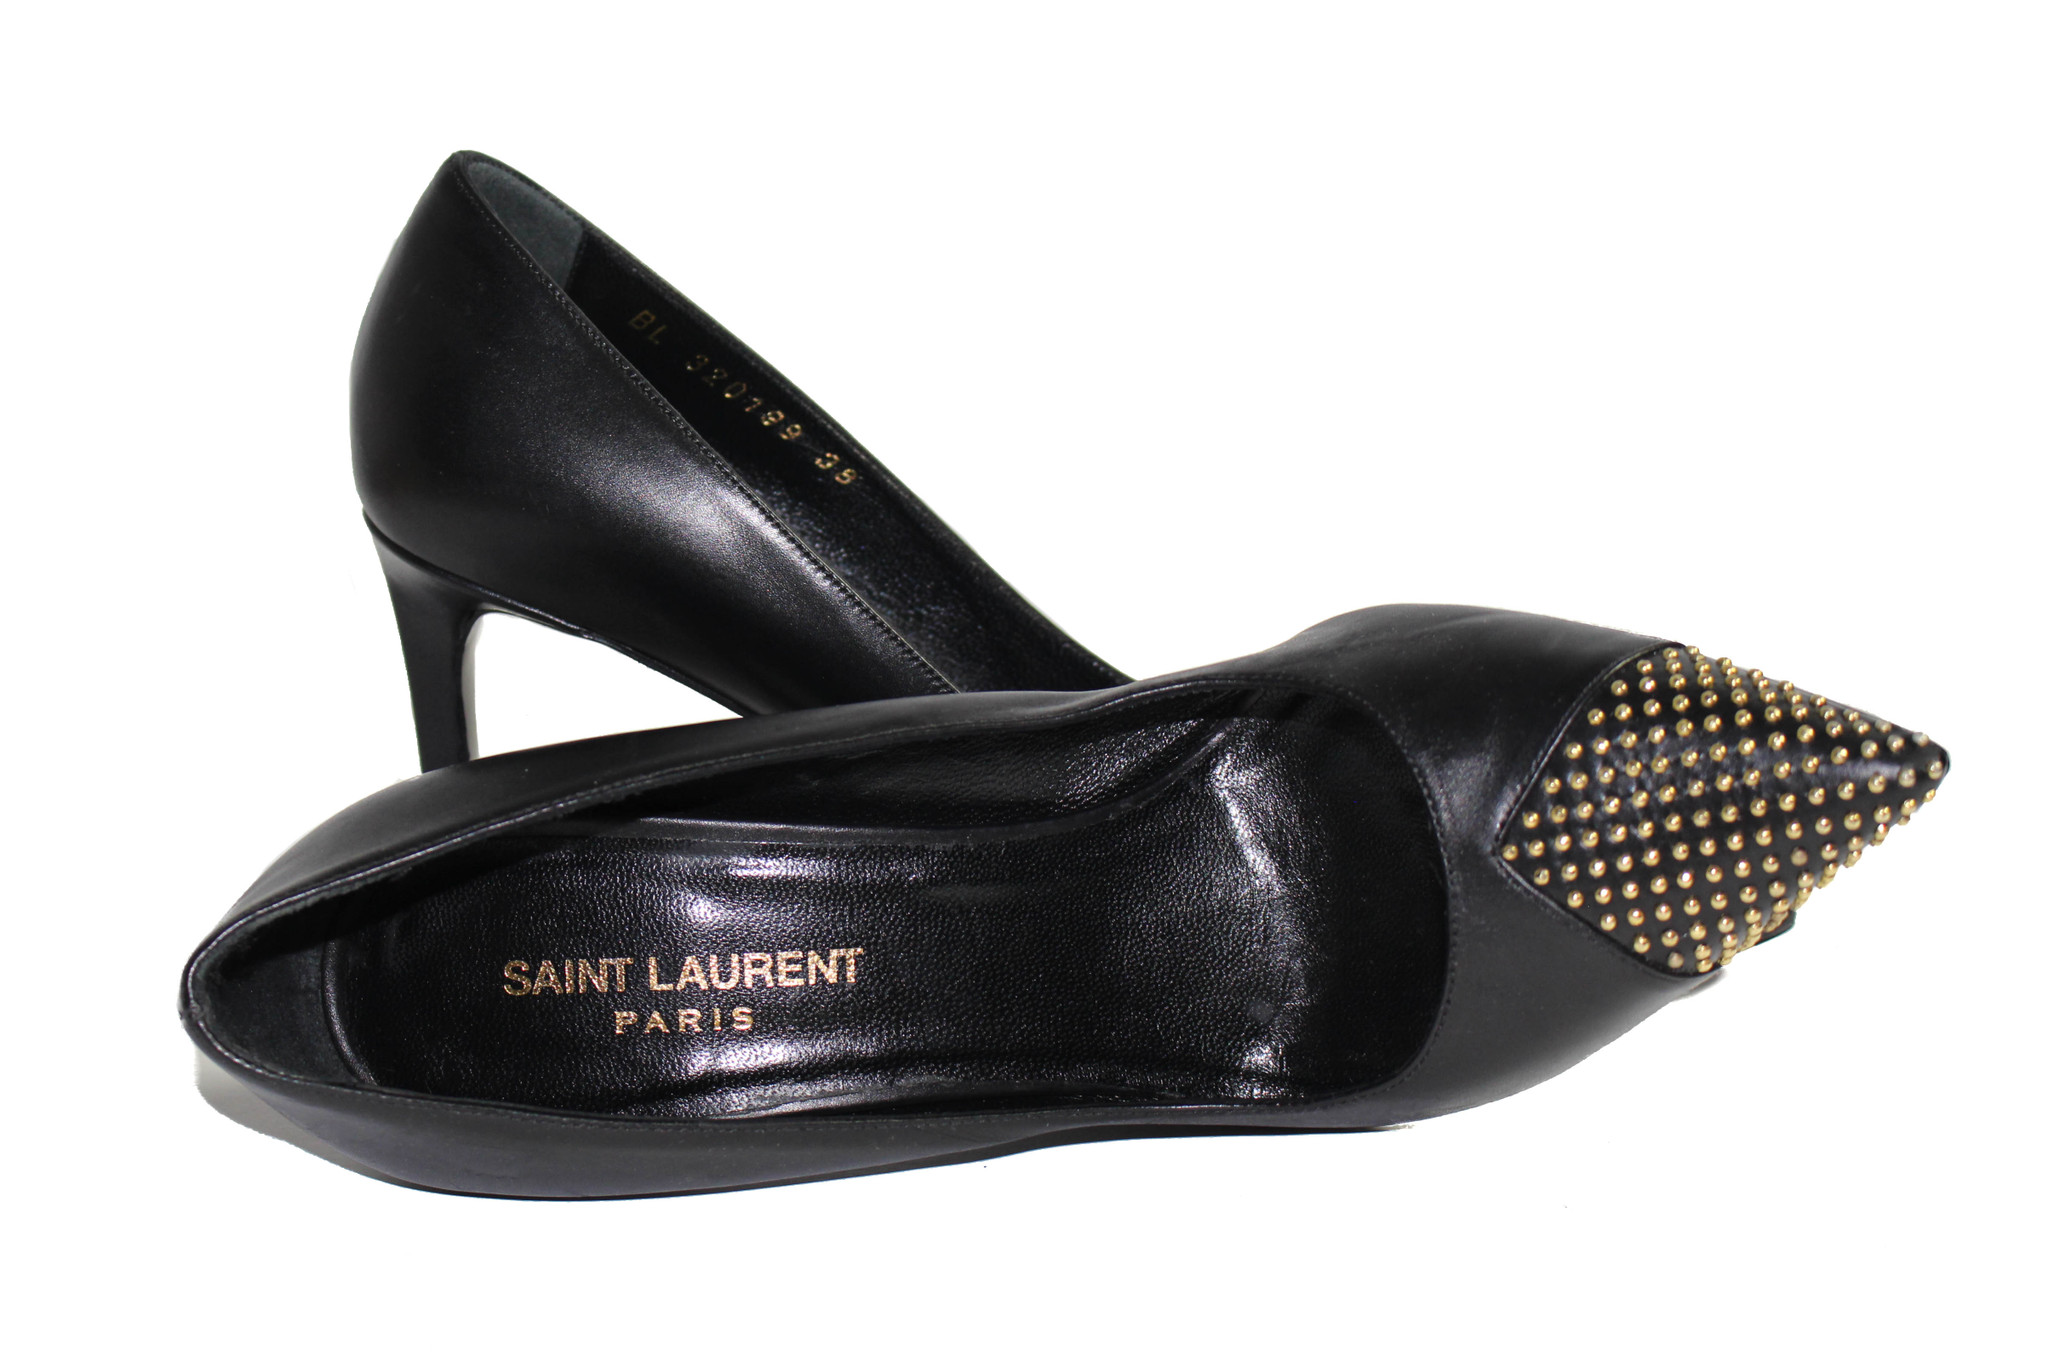 Michael Kors Agnes pointed toe studded heel. | Studded heels, Heels, Studded